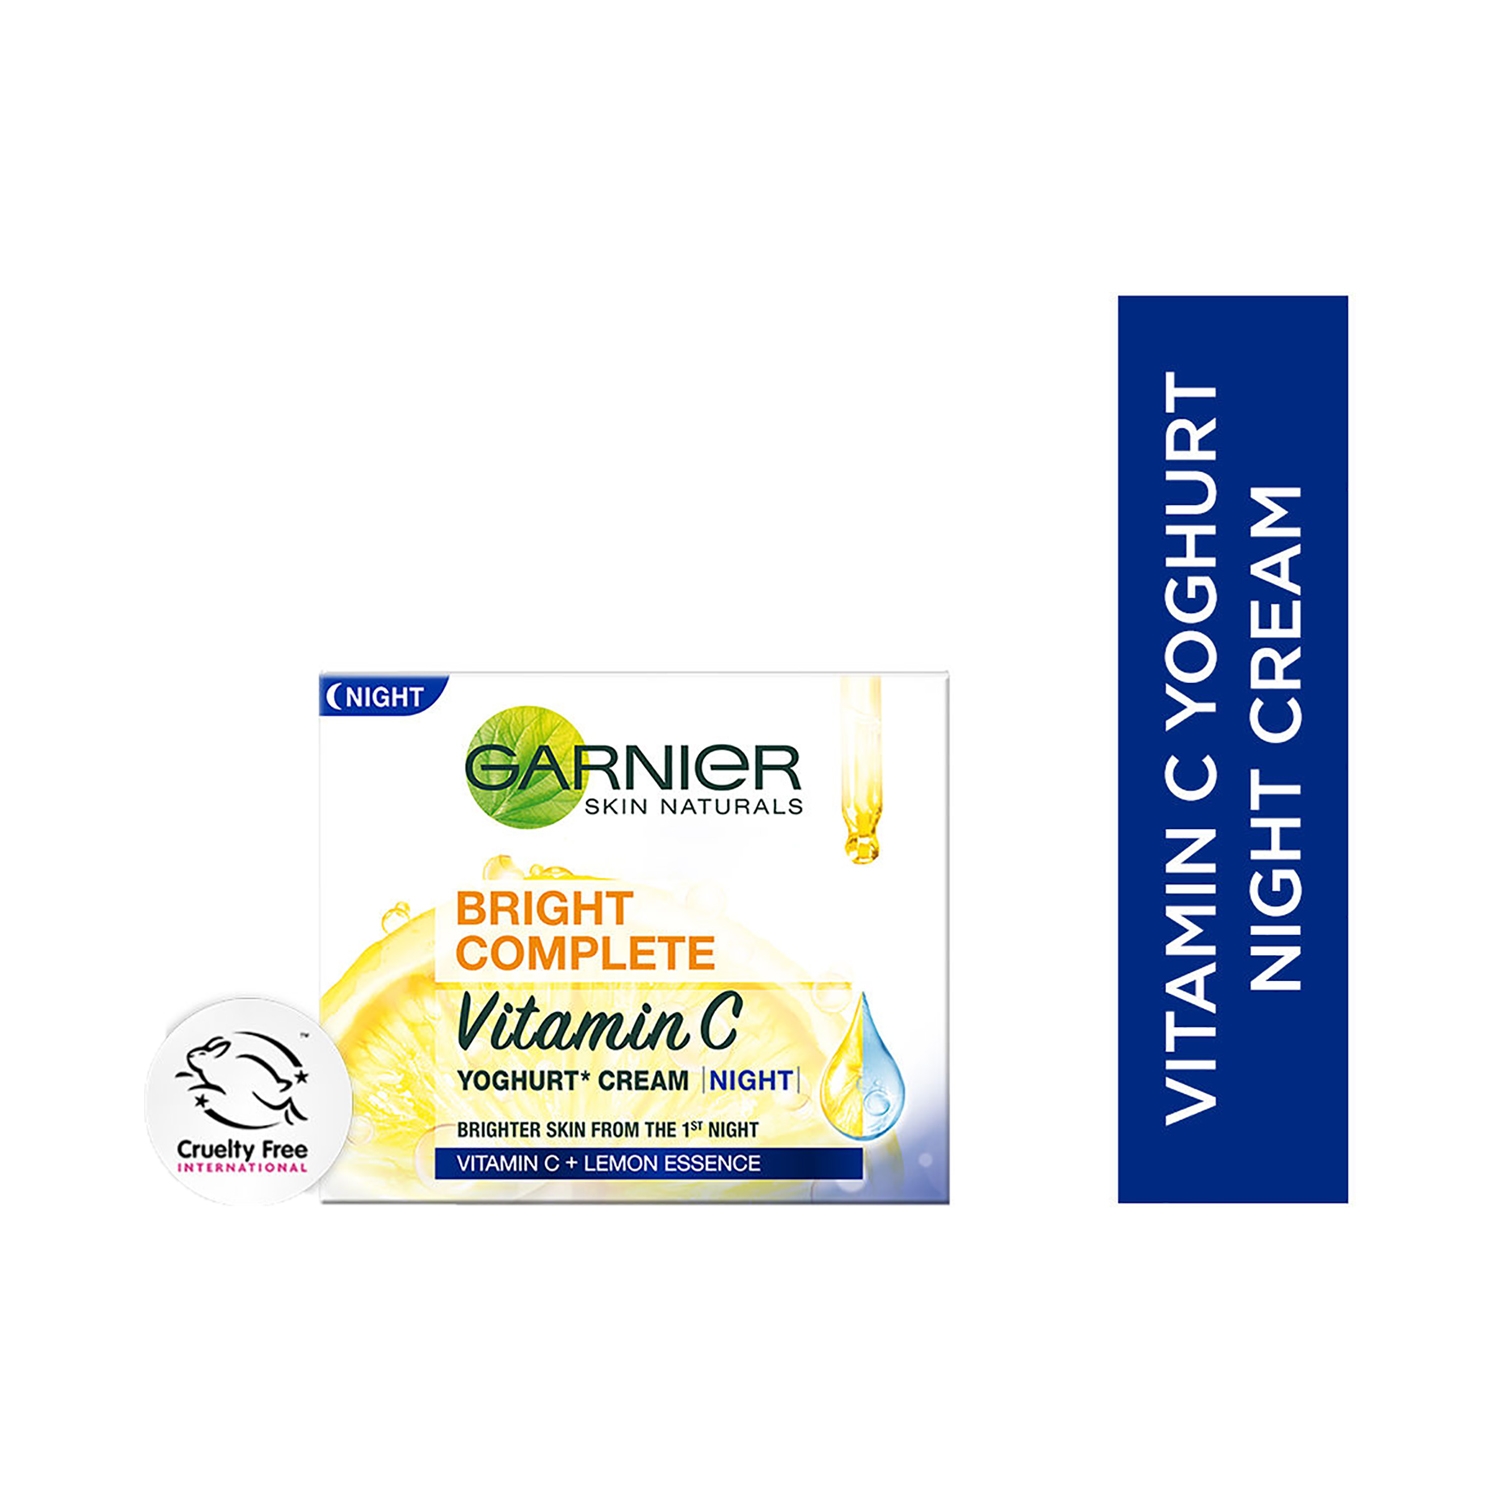 Garnier | Garnier Bright Complete Vitamin C Yoghurt Night Cream (18g)